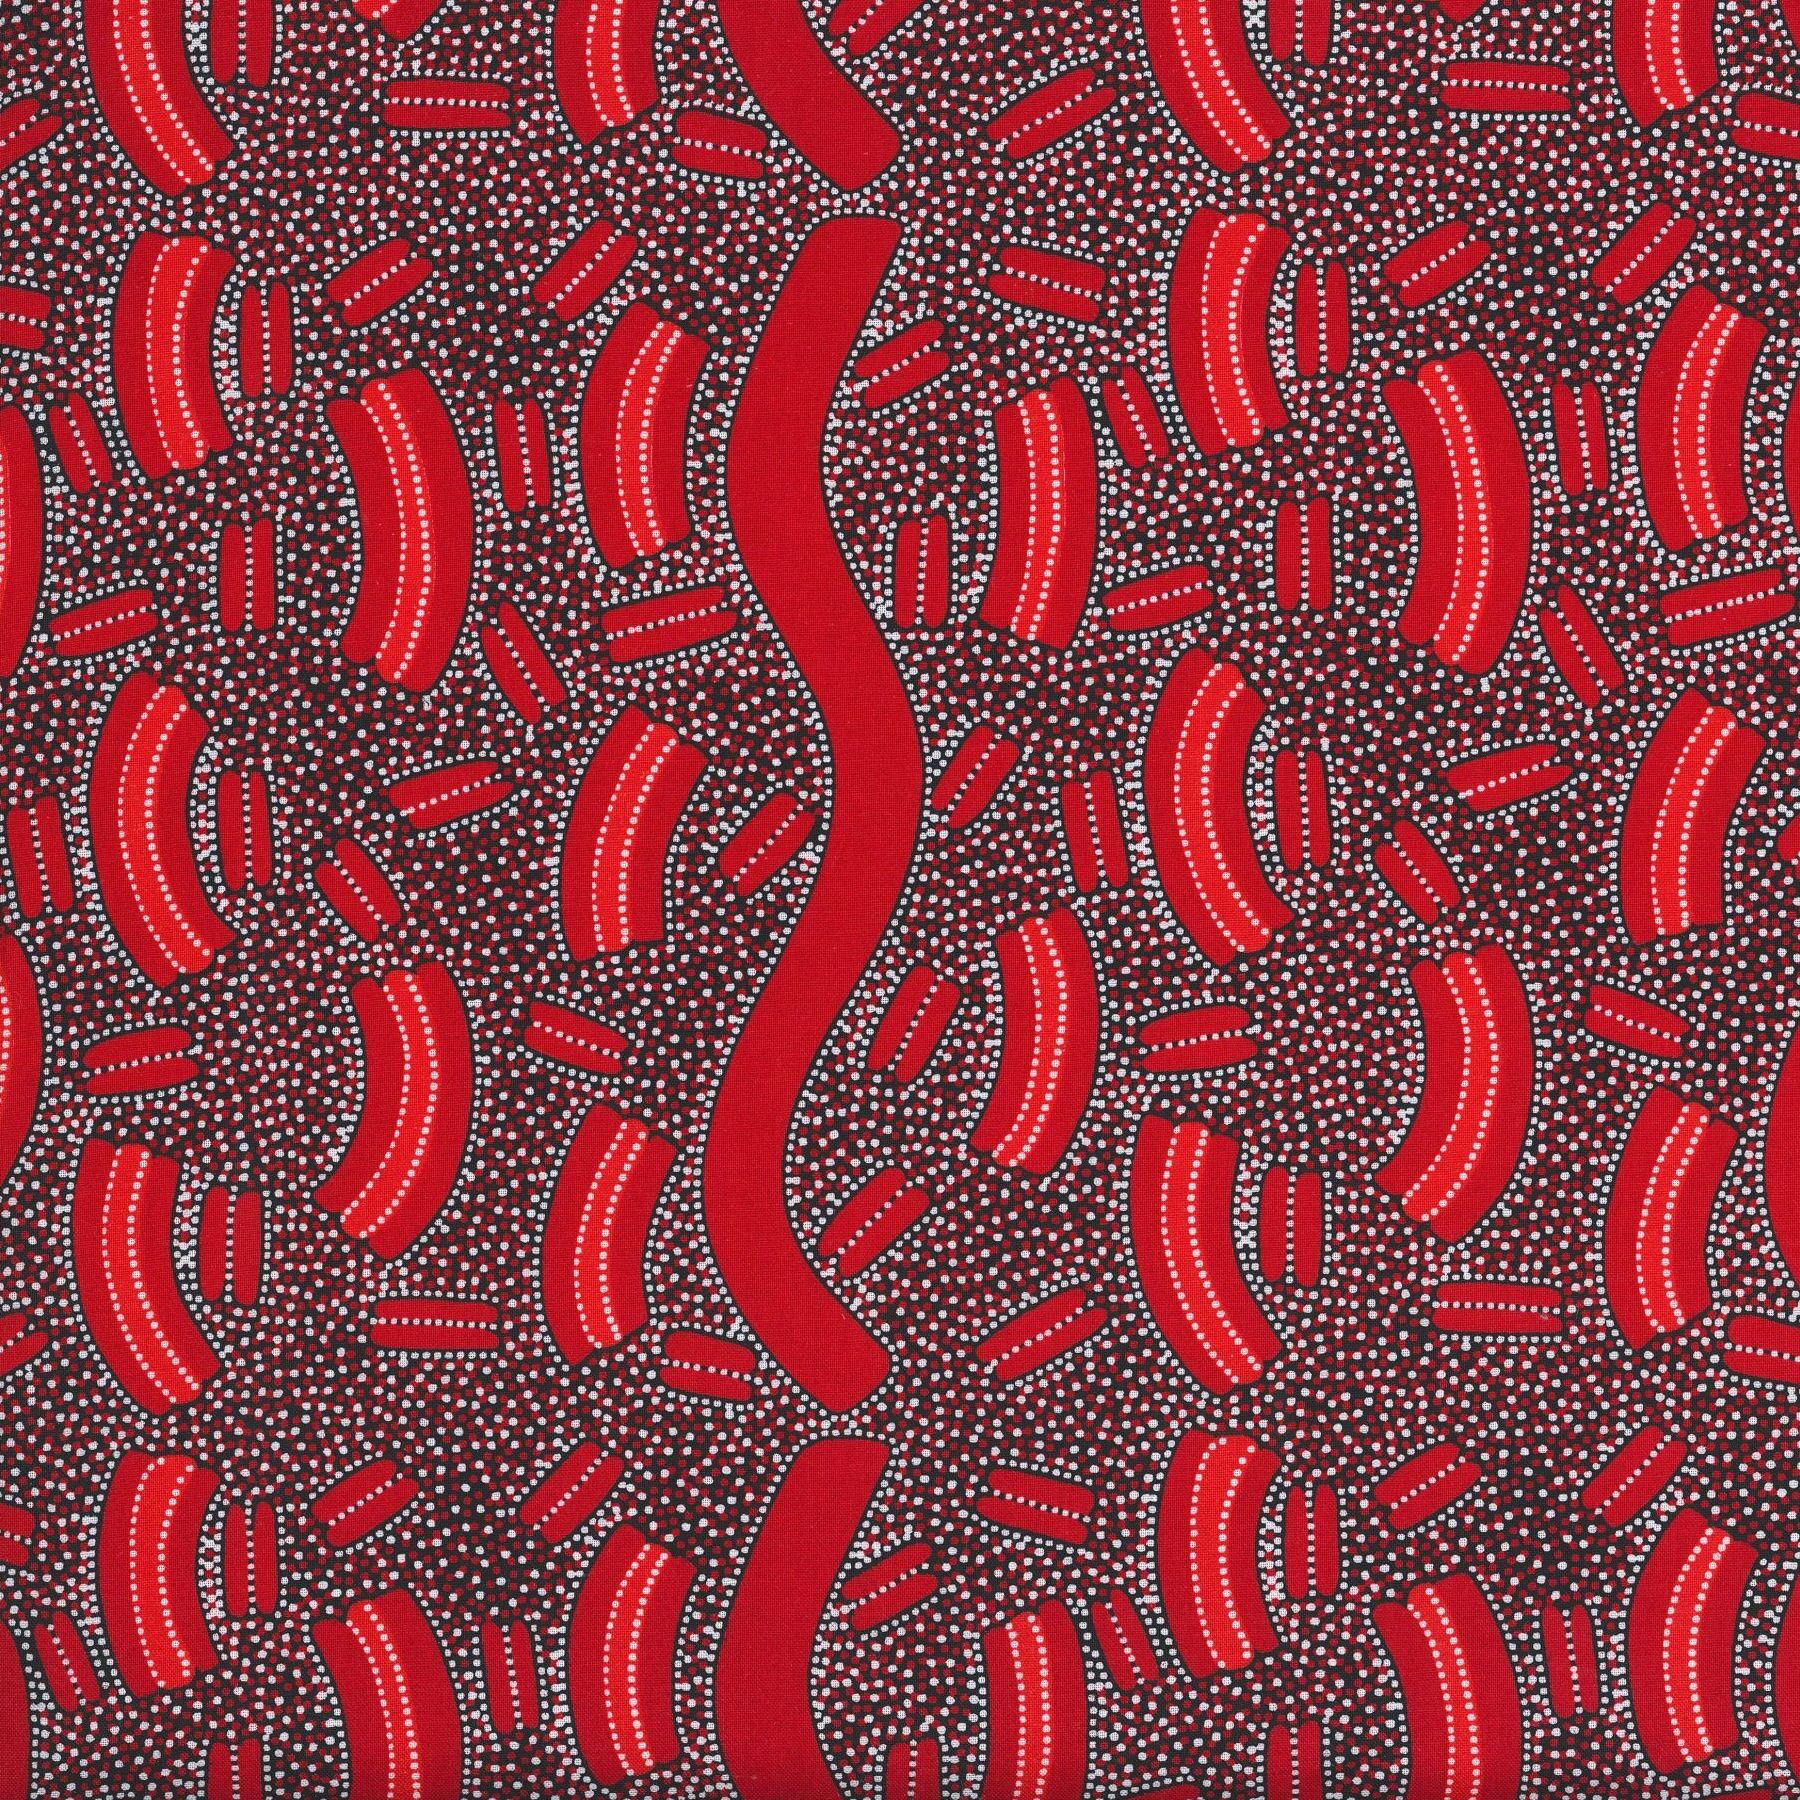 AUSTRALIAN Mulga Seeds dark red